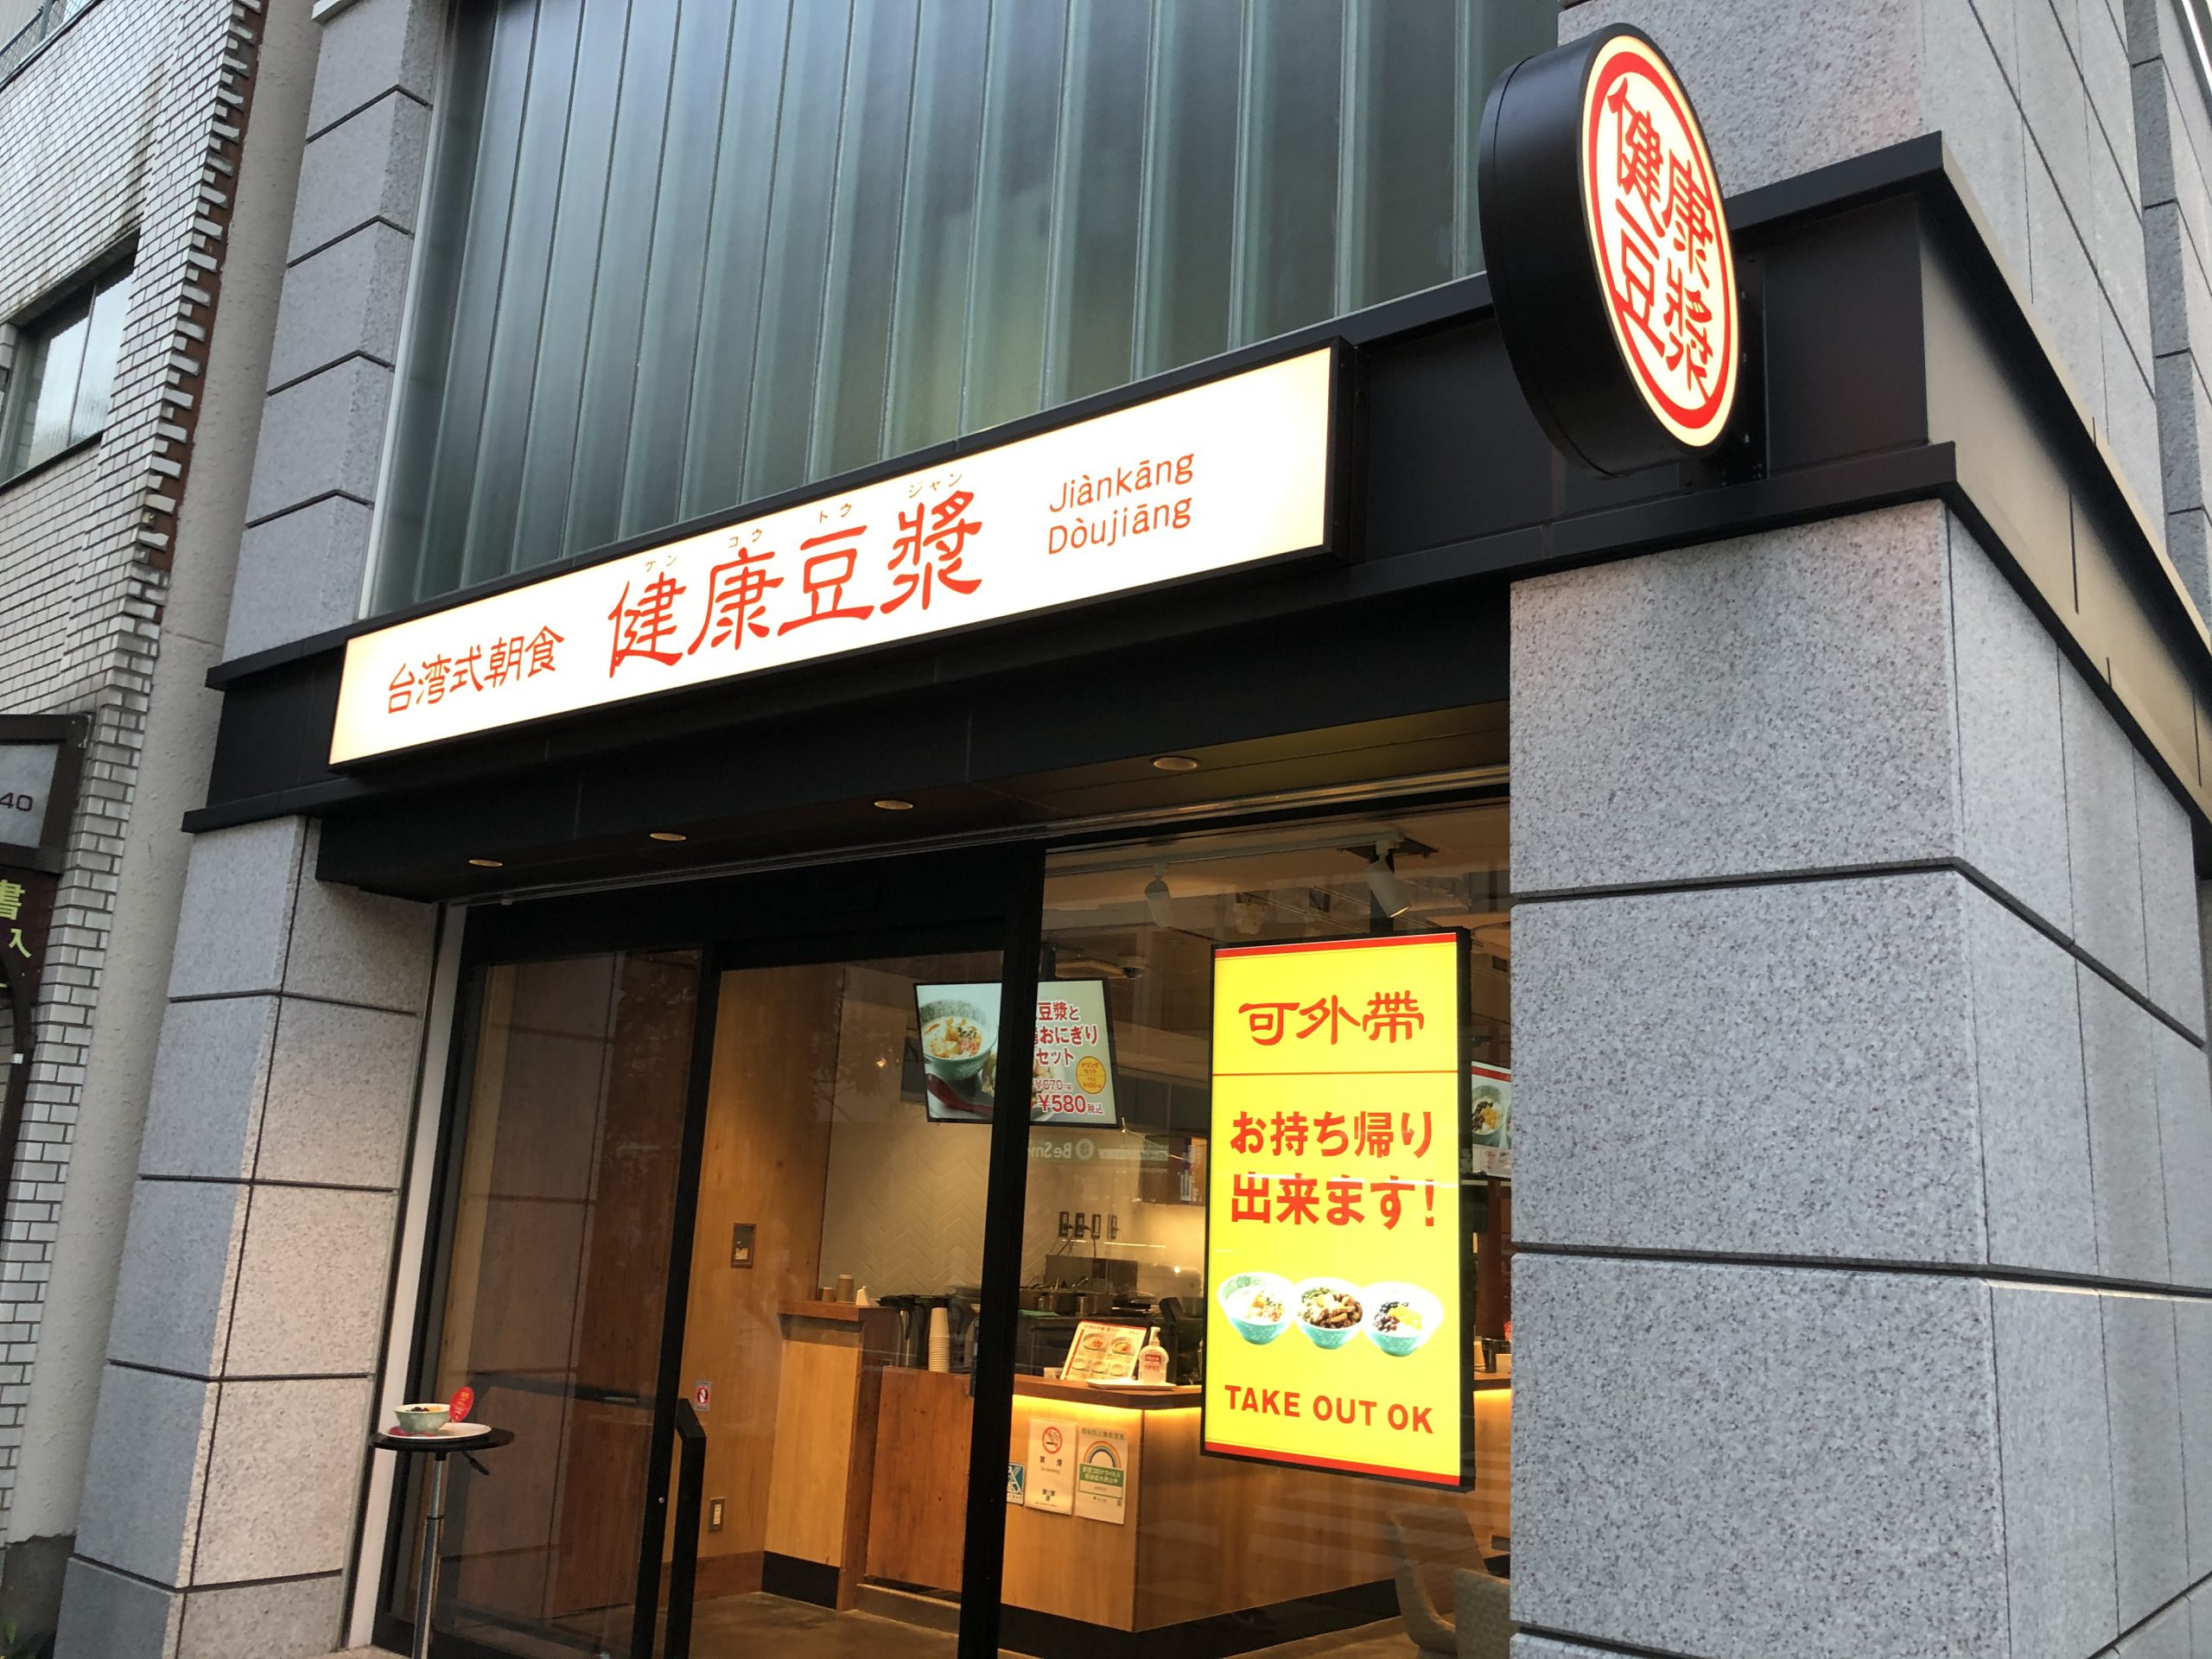 台湾式朝食 健康豆漿 水道橋店 スタイリッシュな店内で味わう台湾の朝ごはん たまねこトラベル